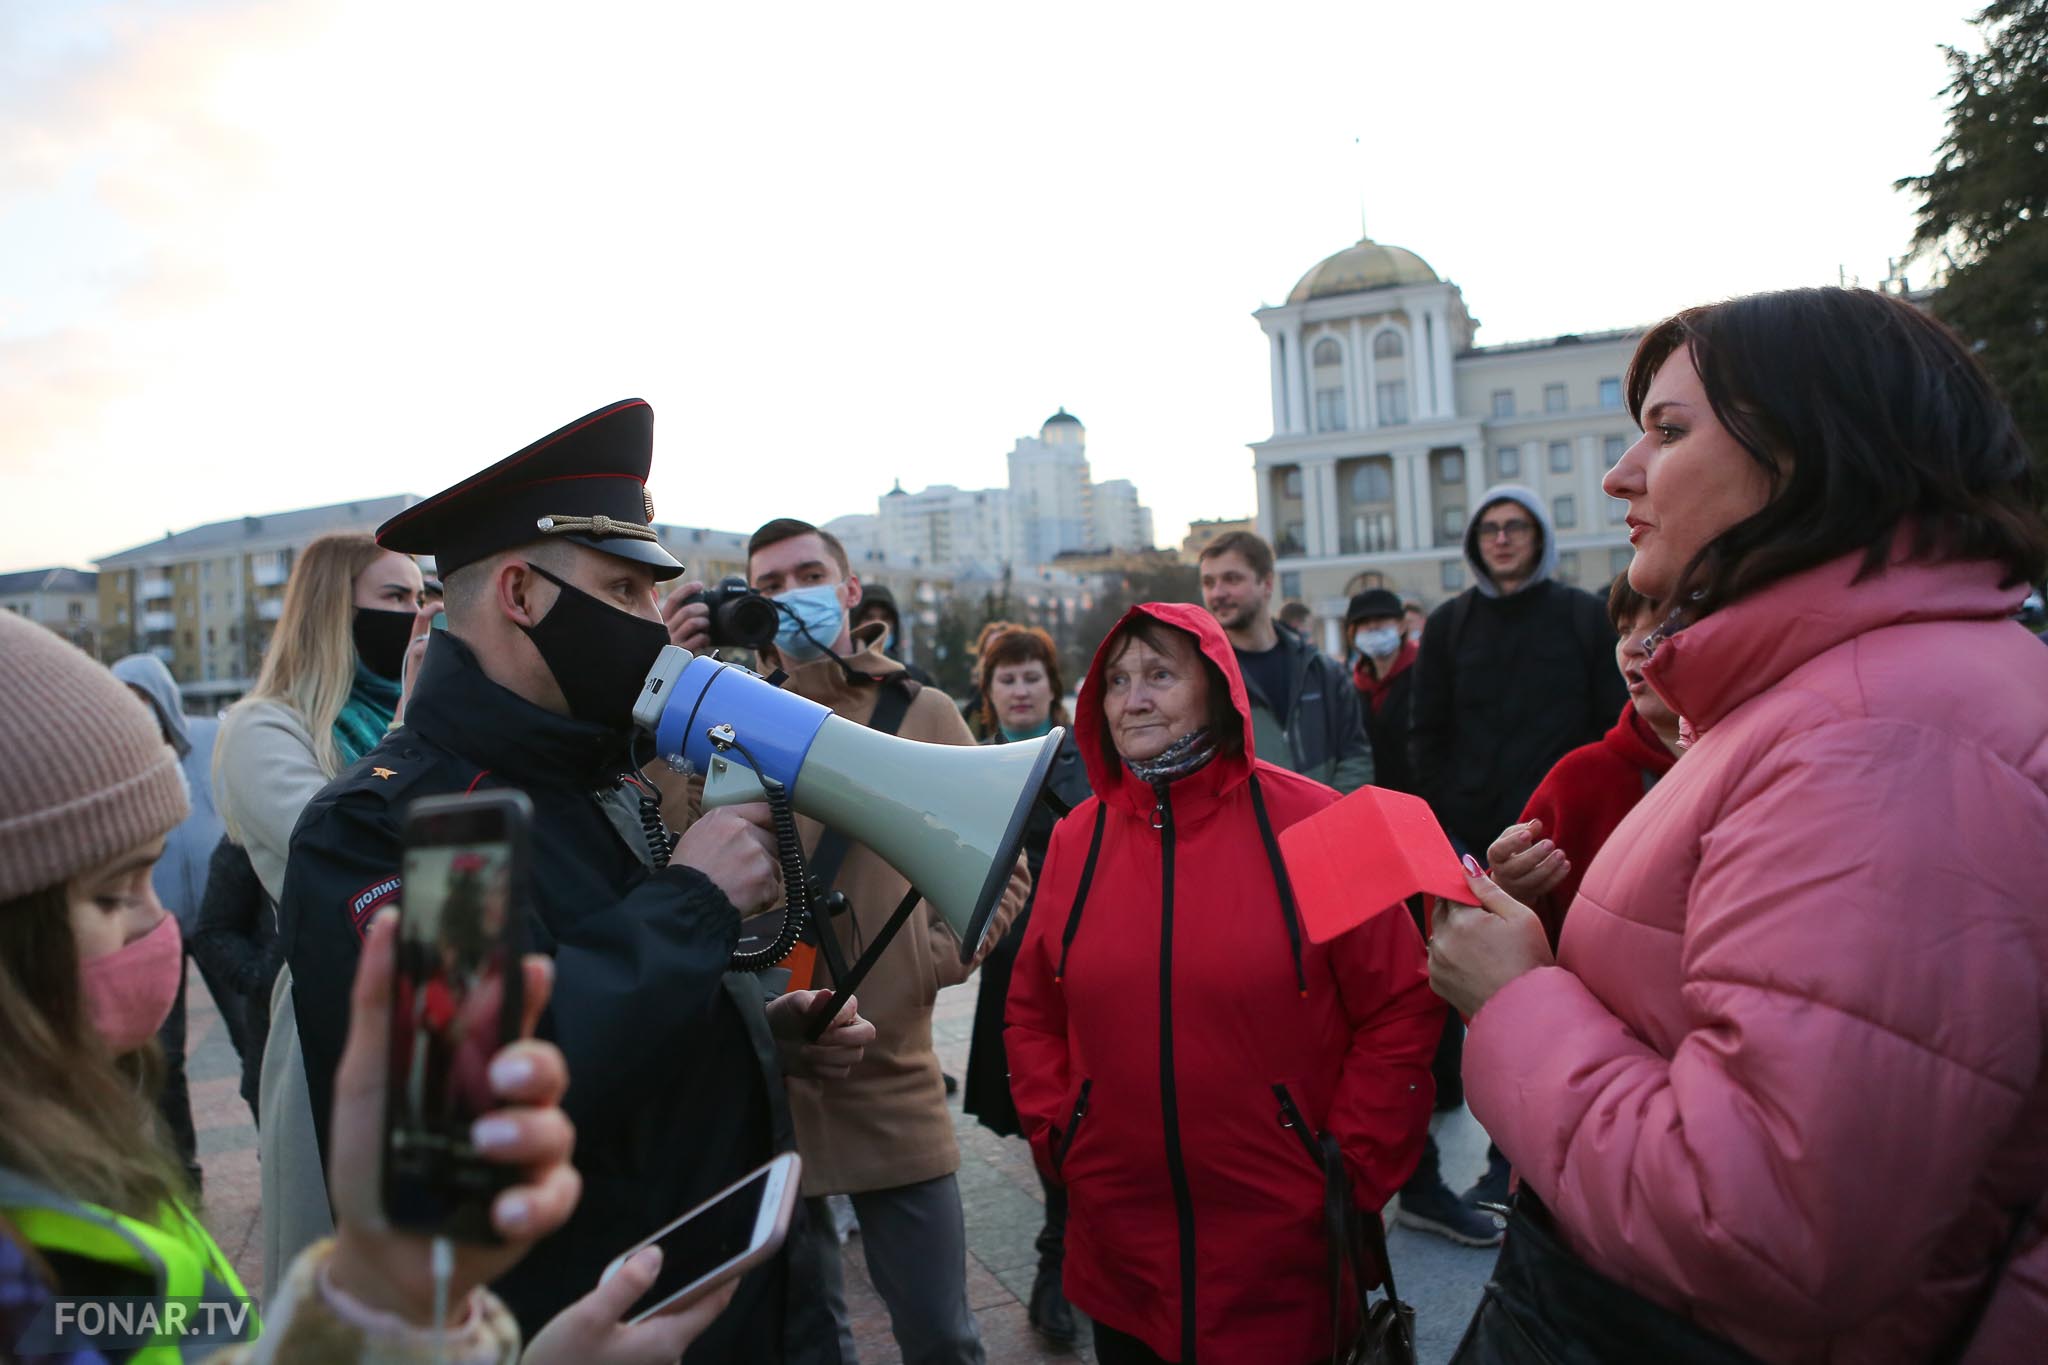 Митинг в Белгороде 21. Торжественный митинг в Белгороде. Вечер 21 апреля. 2 Апреля 2017 Челябинск митинг.